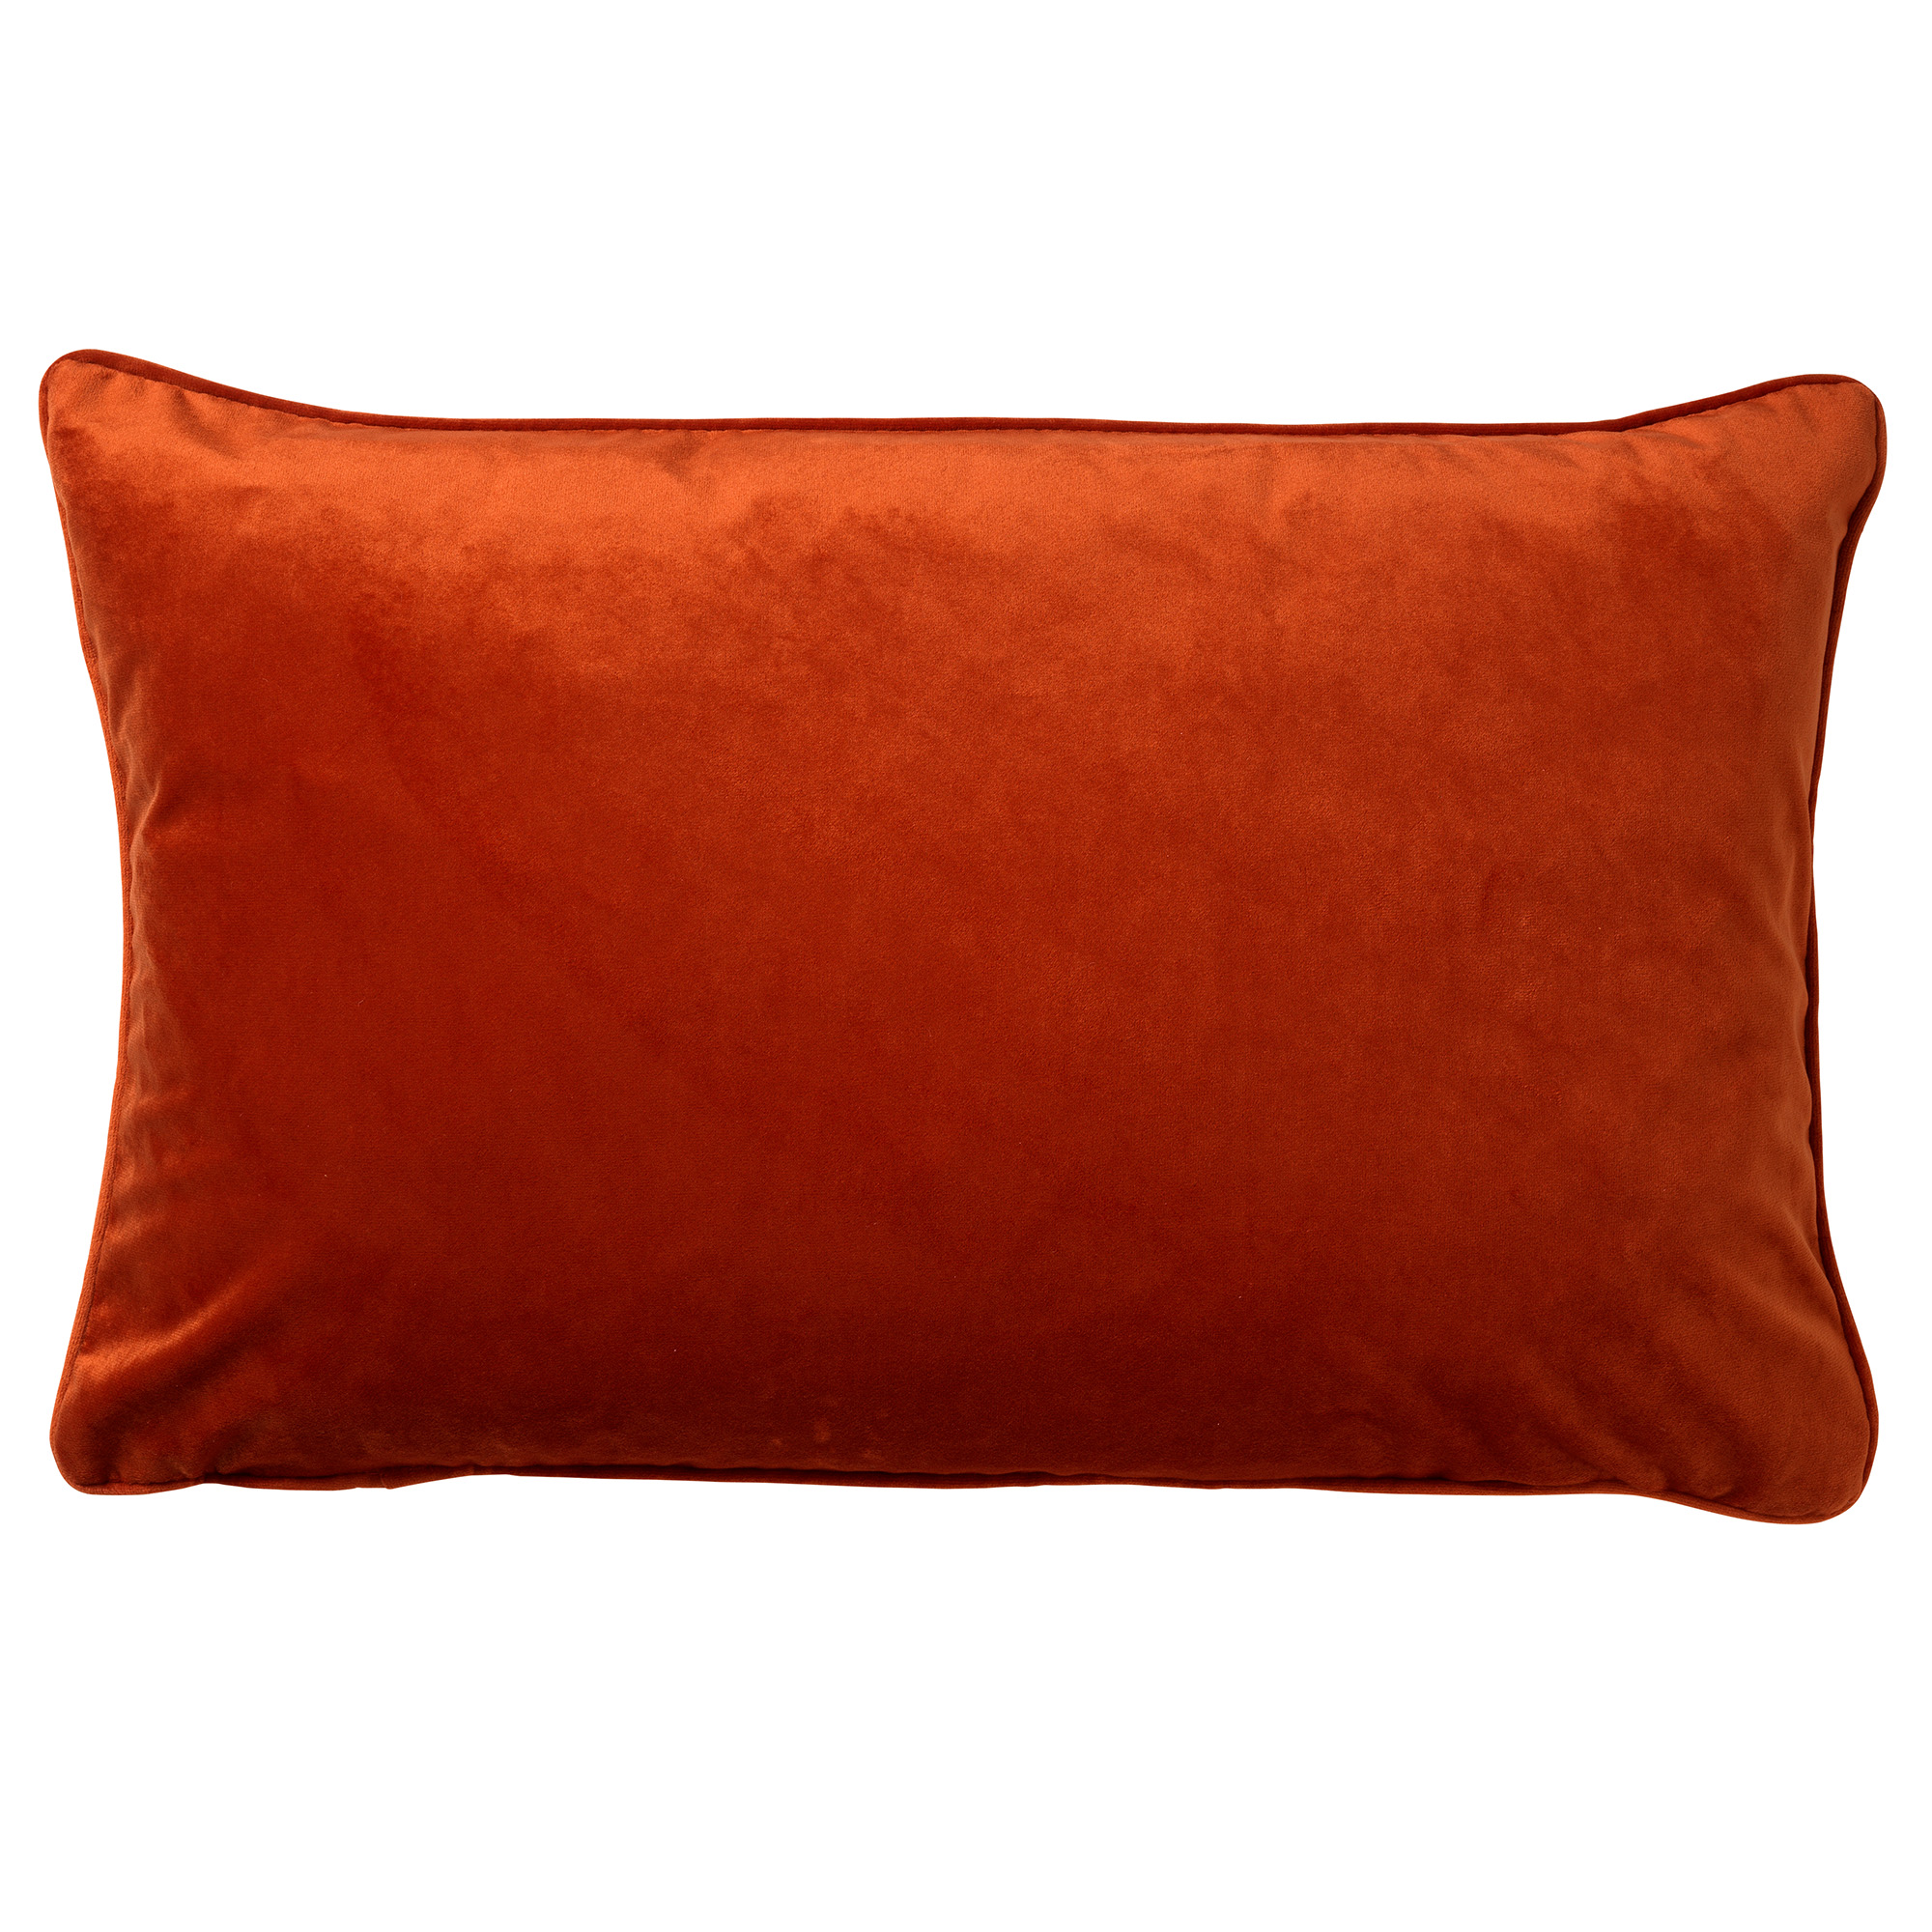 FINN - Cushion velvet 40x60 cm Potters Clay - orange-terracotta